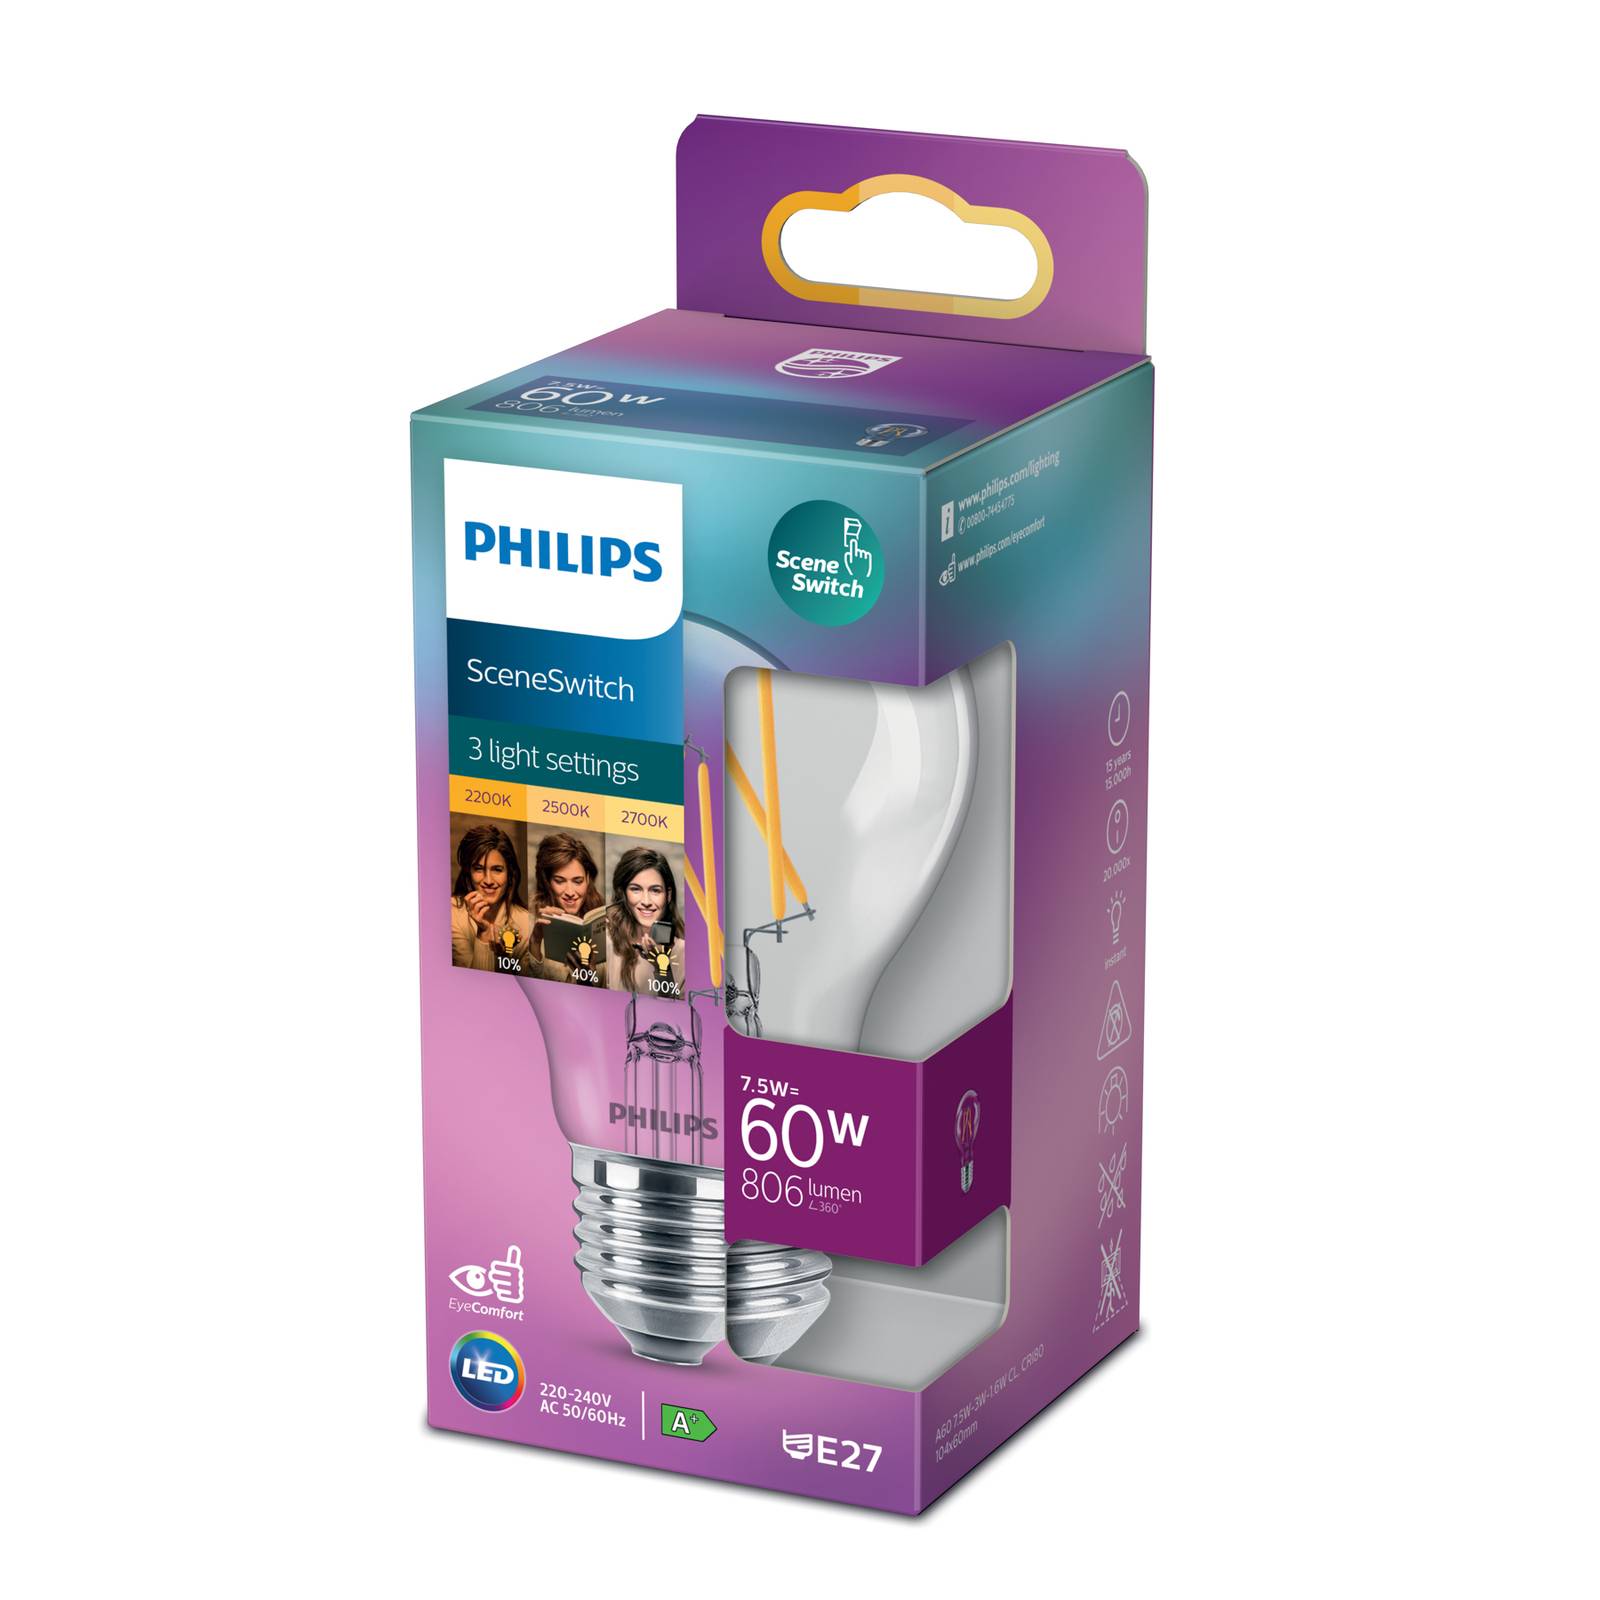 Philips SceneSwitch E27 LED-lampa 7,5W Filament